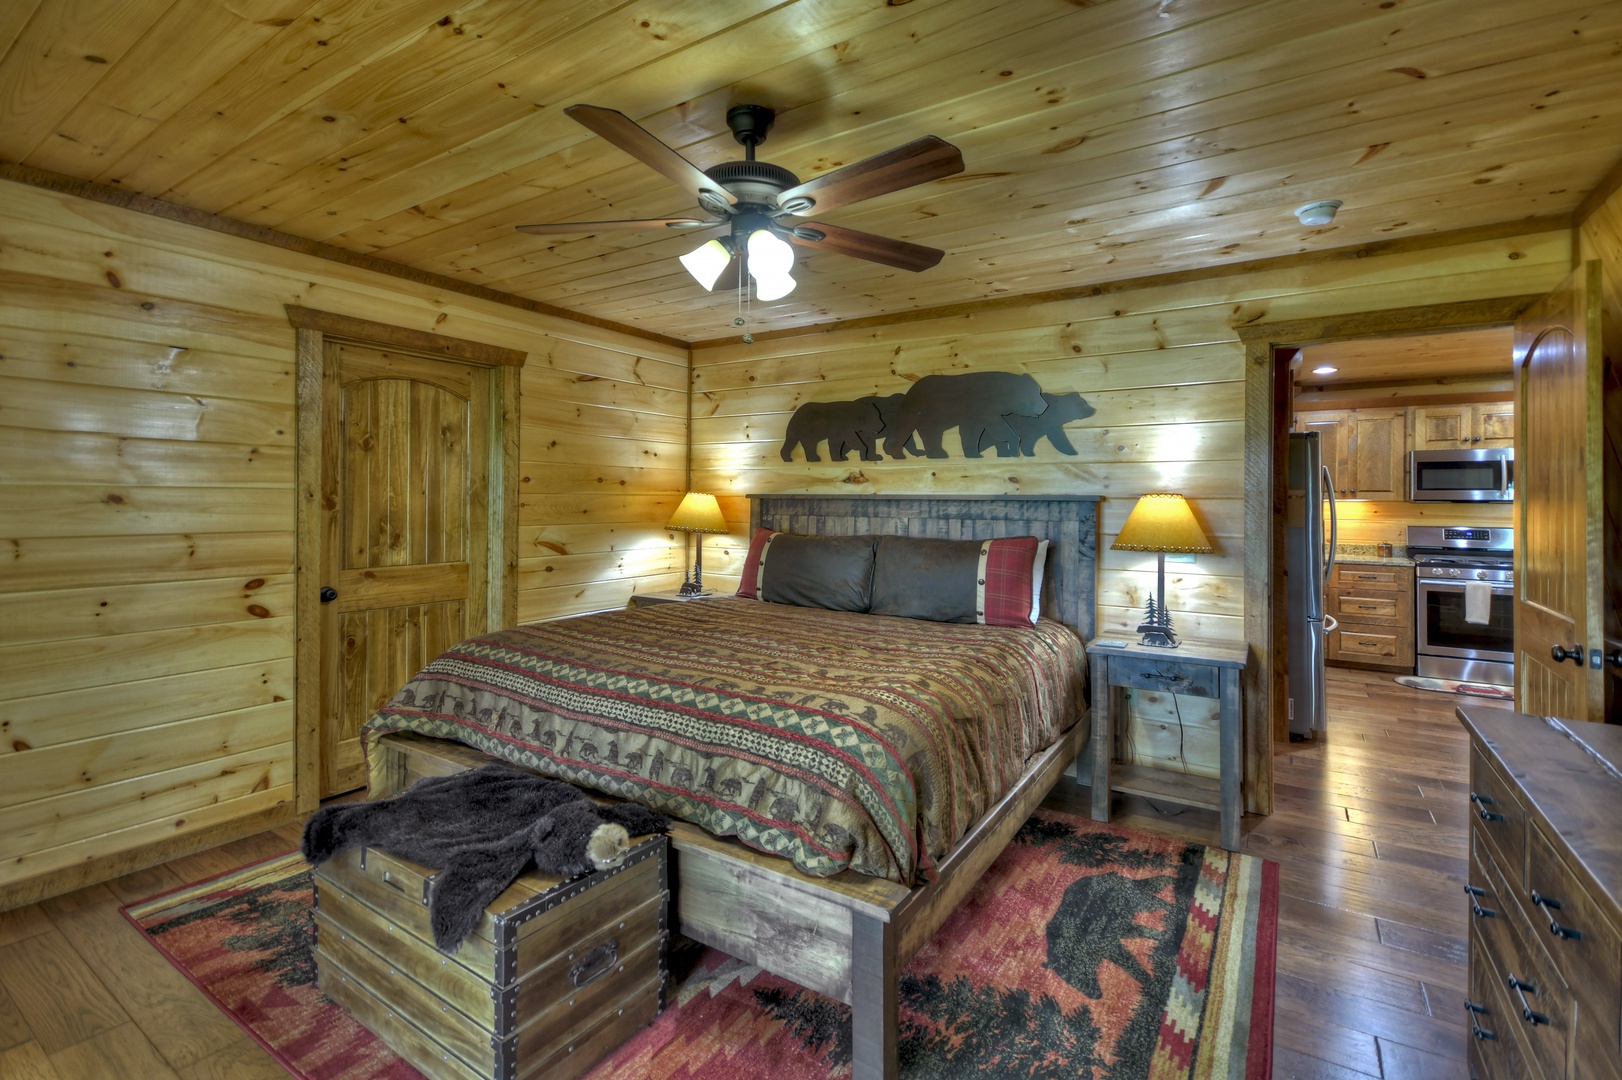 Deer Trails Cabin - Entry Level King Bedroom